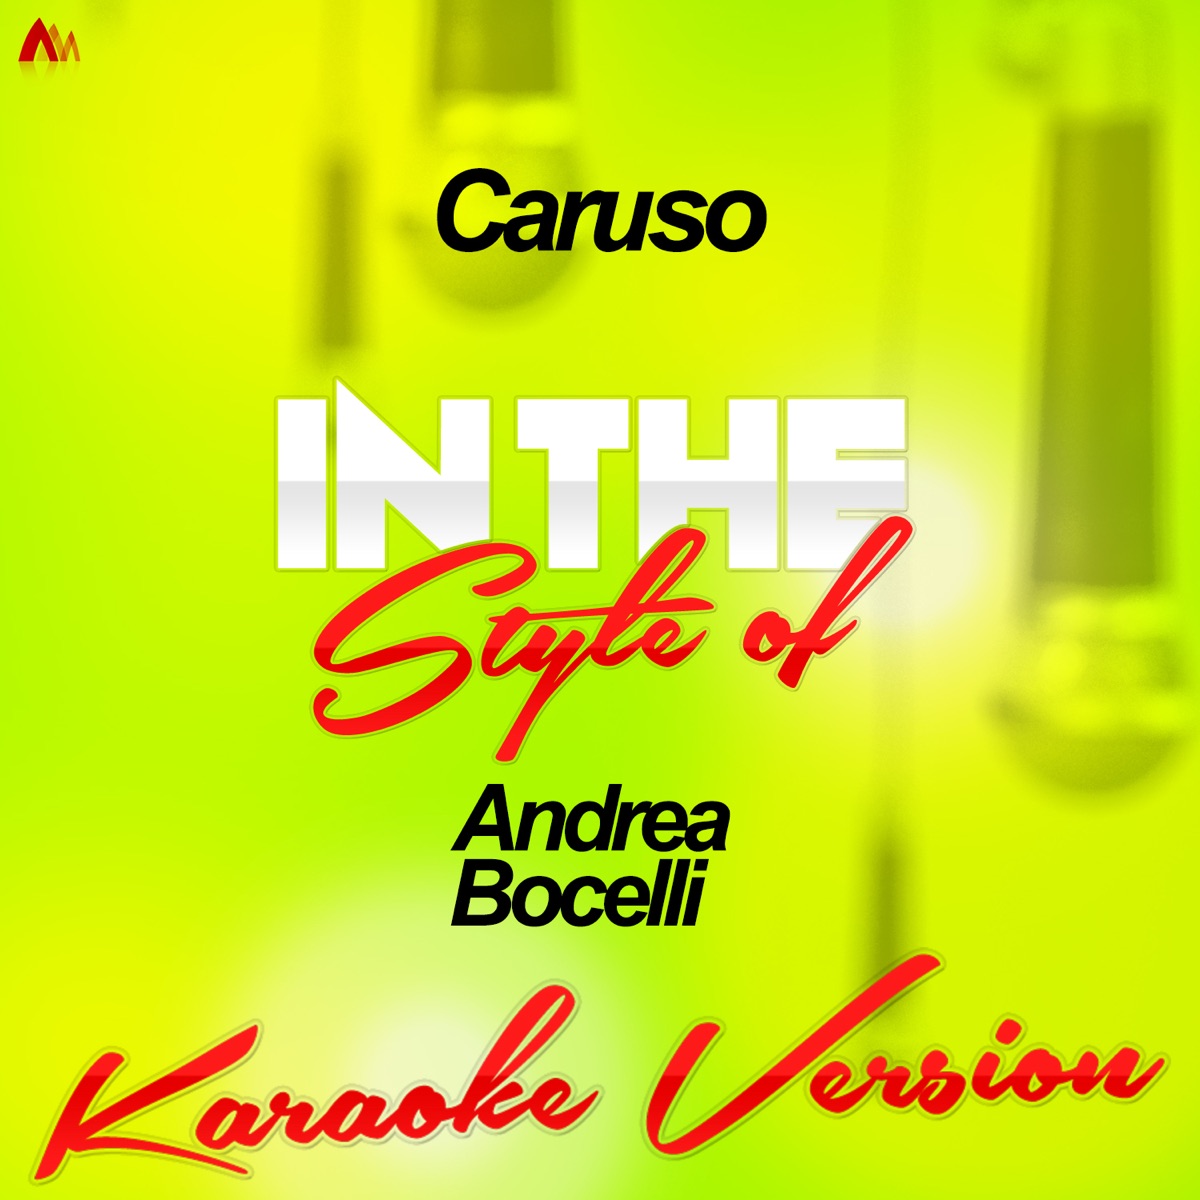 Caruso (In the Style of Andrea Bocelli) [Karaoke Version] - Single - Album  by Ameritz Audio Karaoke - Apple Music